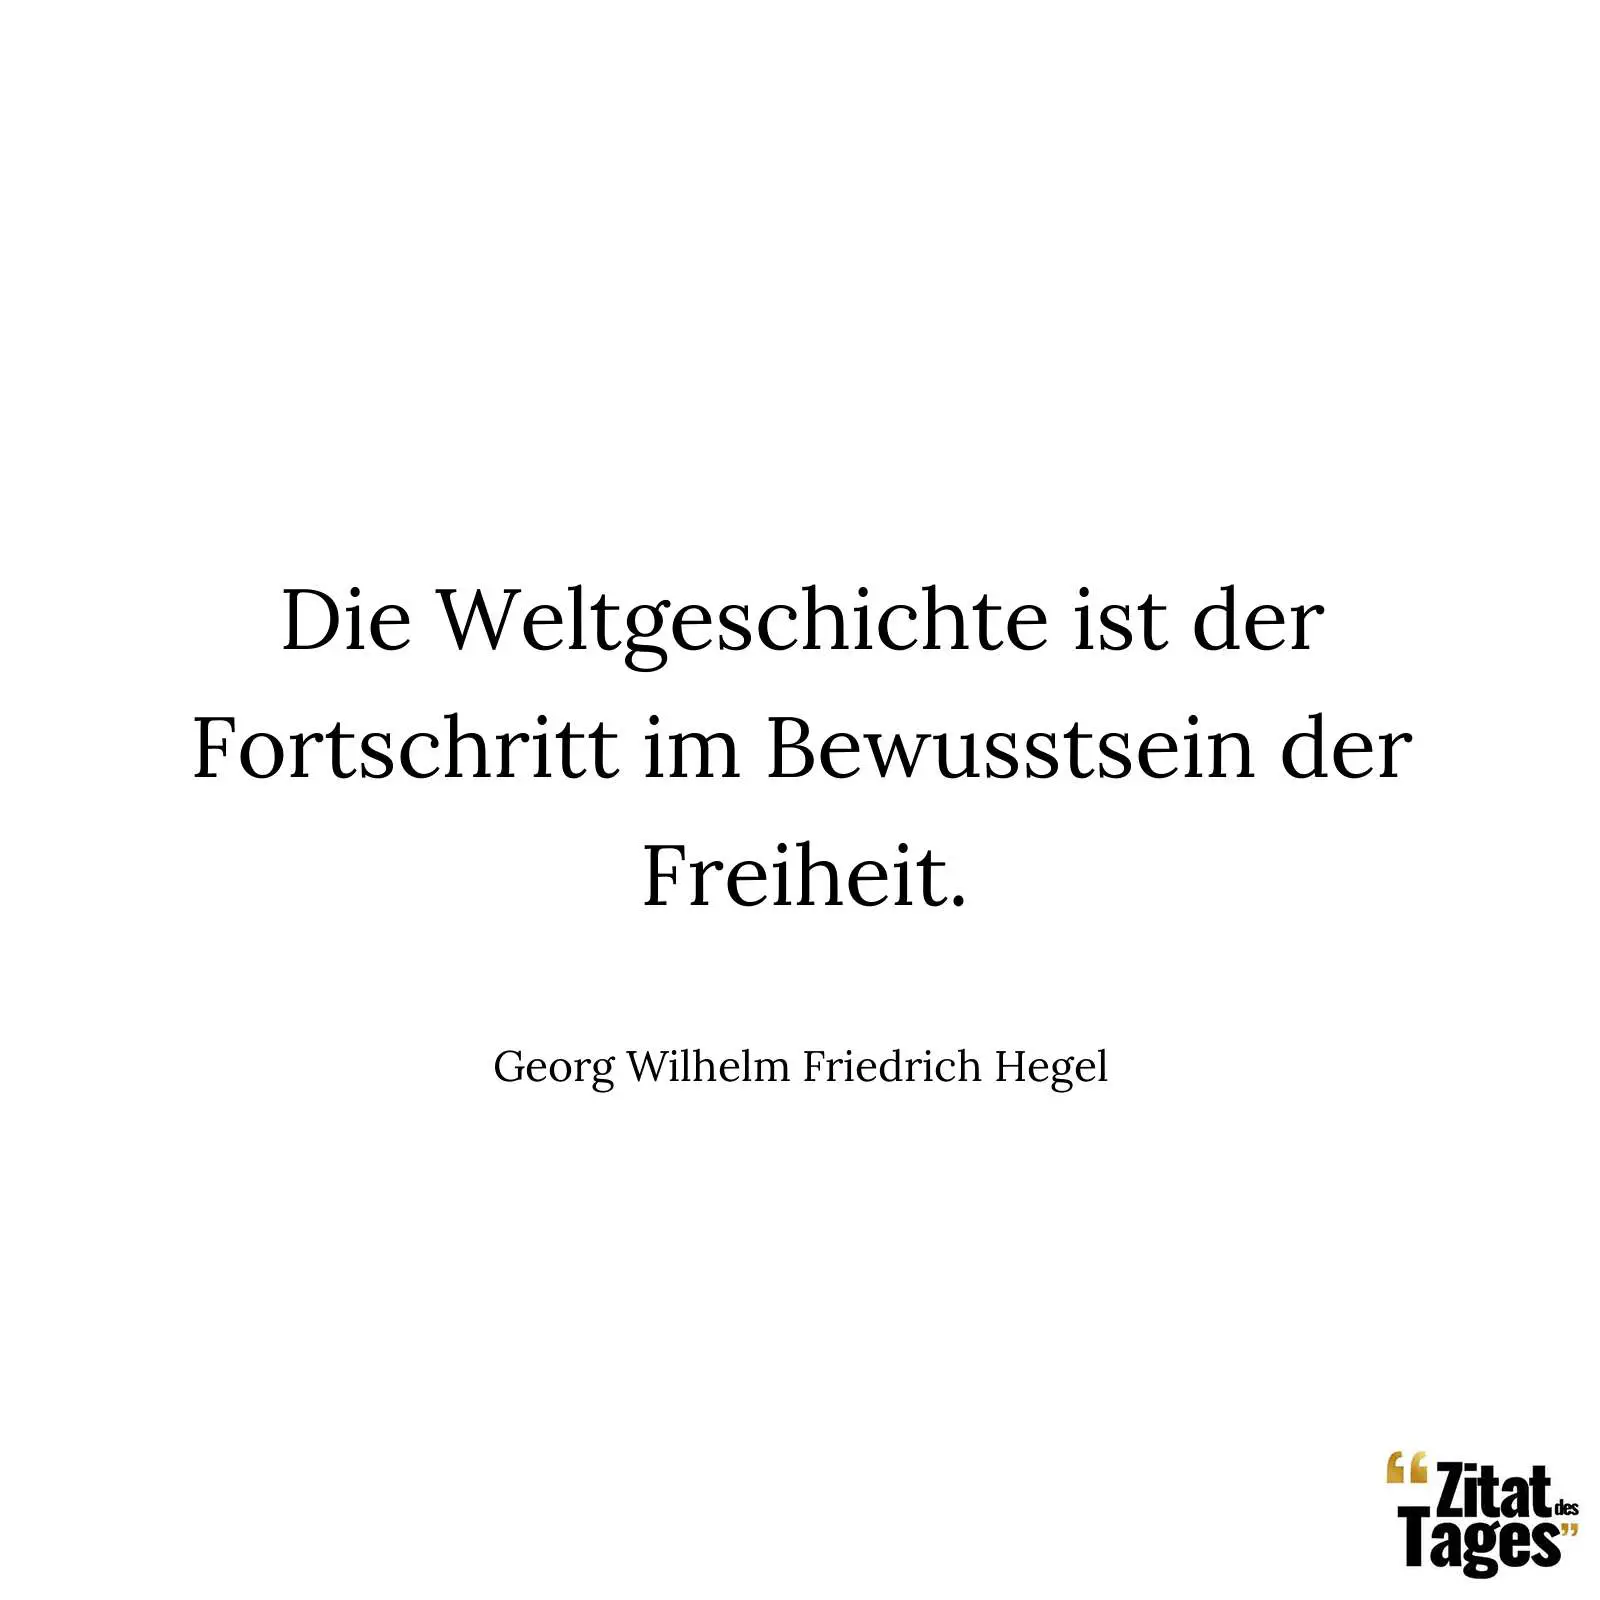 Die Weltgeschichte ist der Fortschritt im Bewusstsein der Freiheit. - Georg Wilhelm Friedrich Hegel